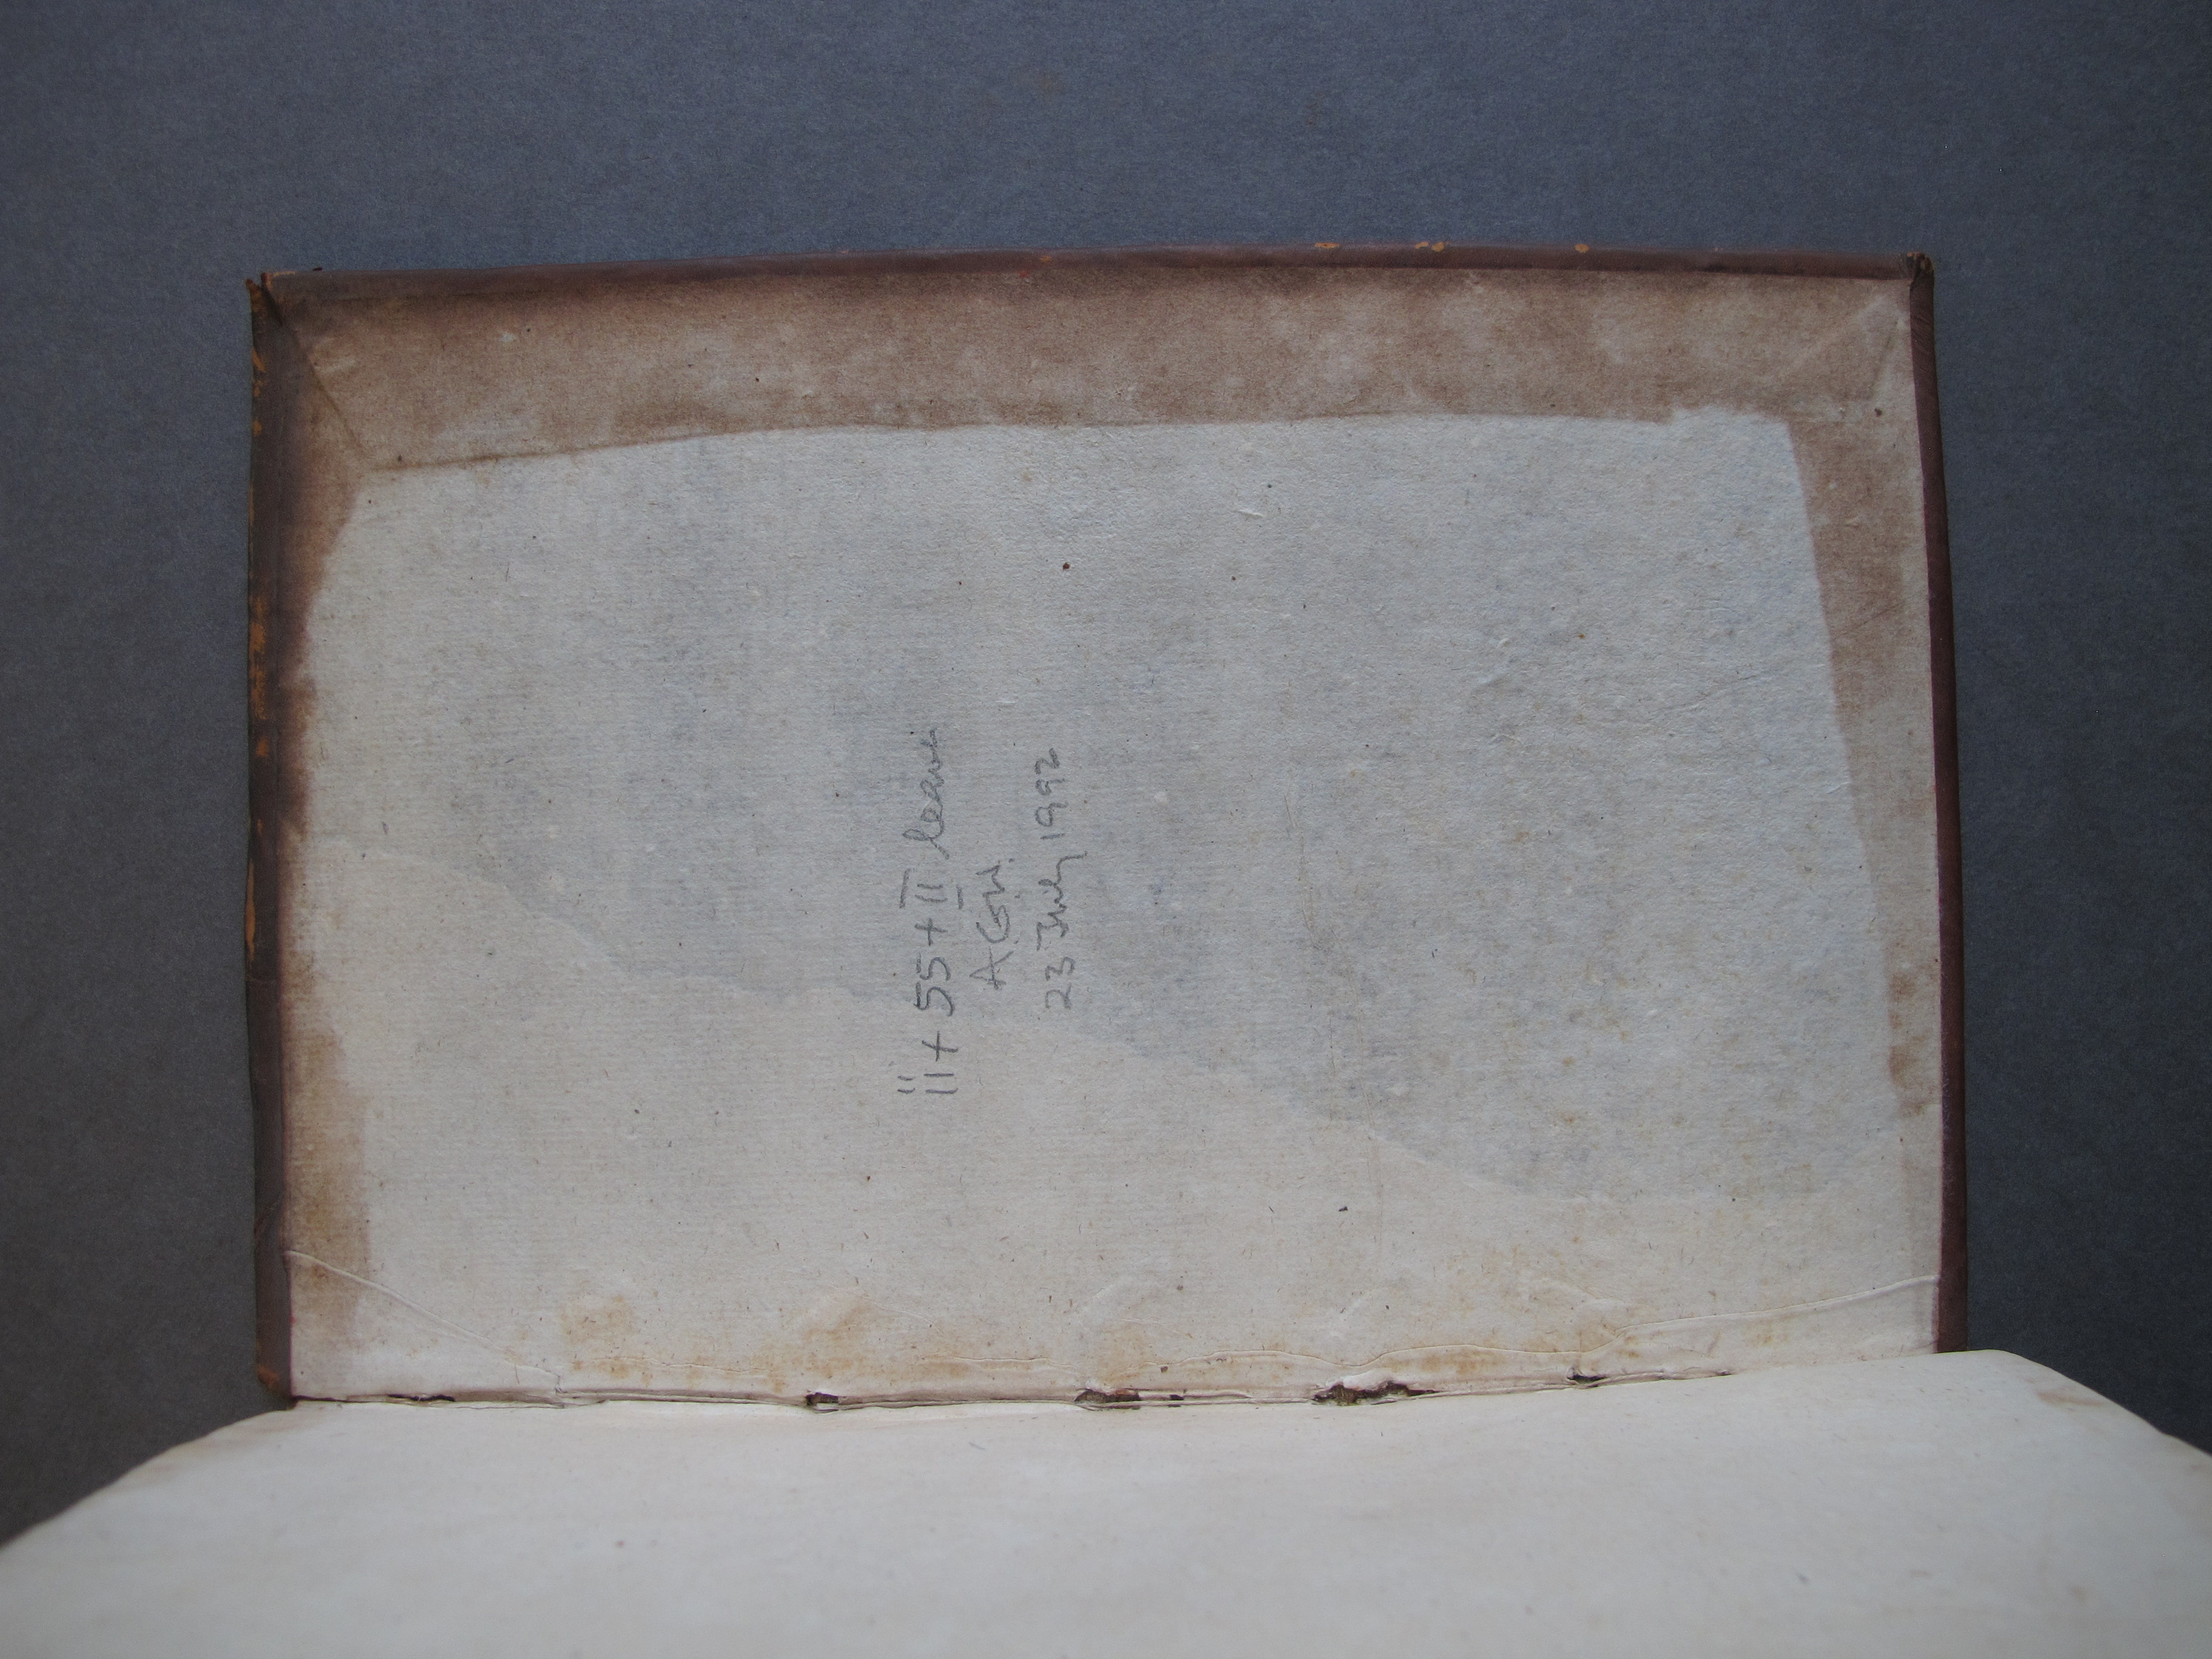 Folio 58 recto